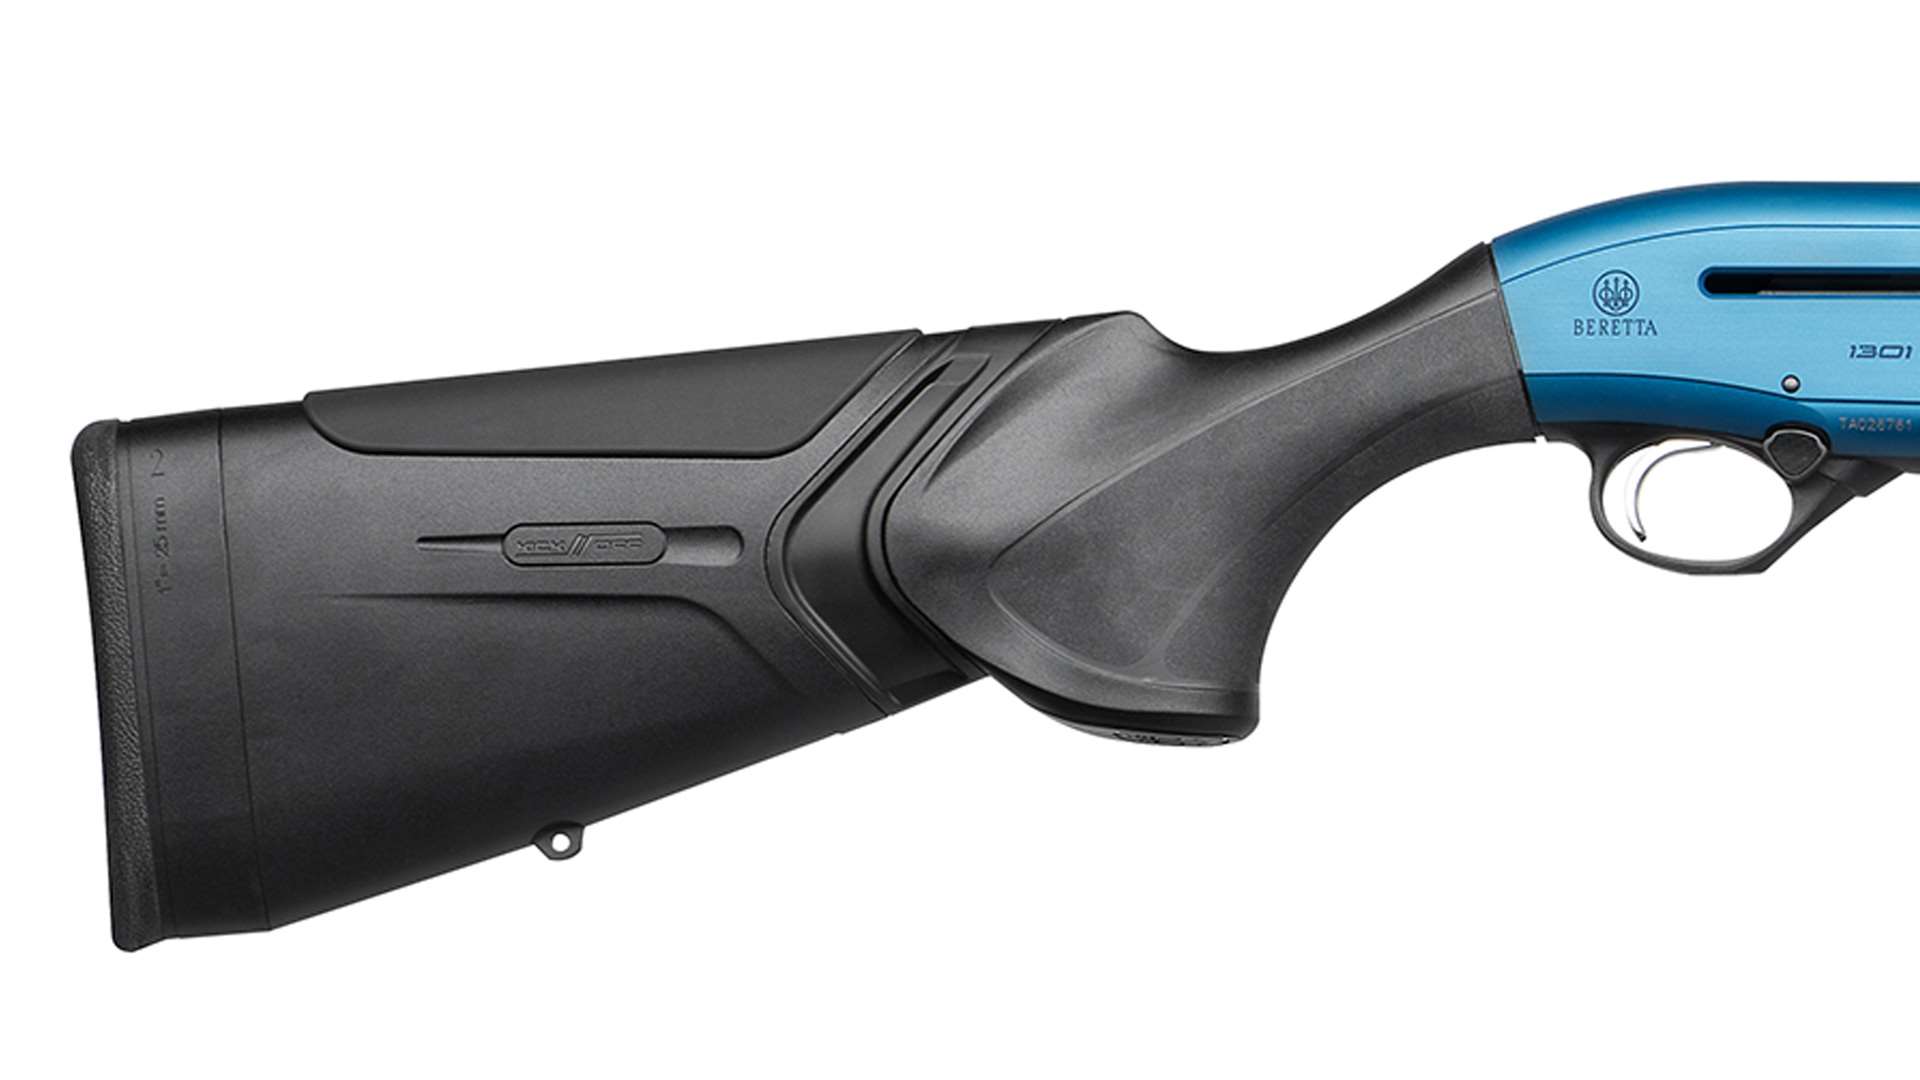 Beretta 1301 Comp Pro stock